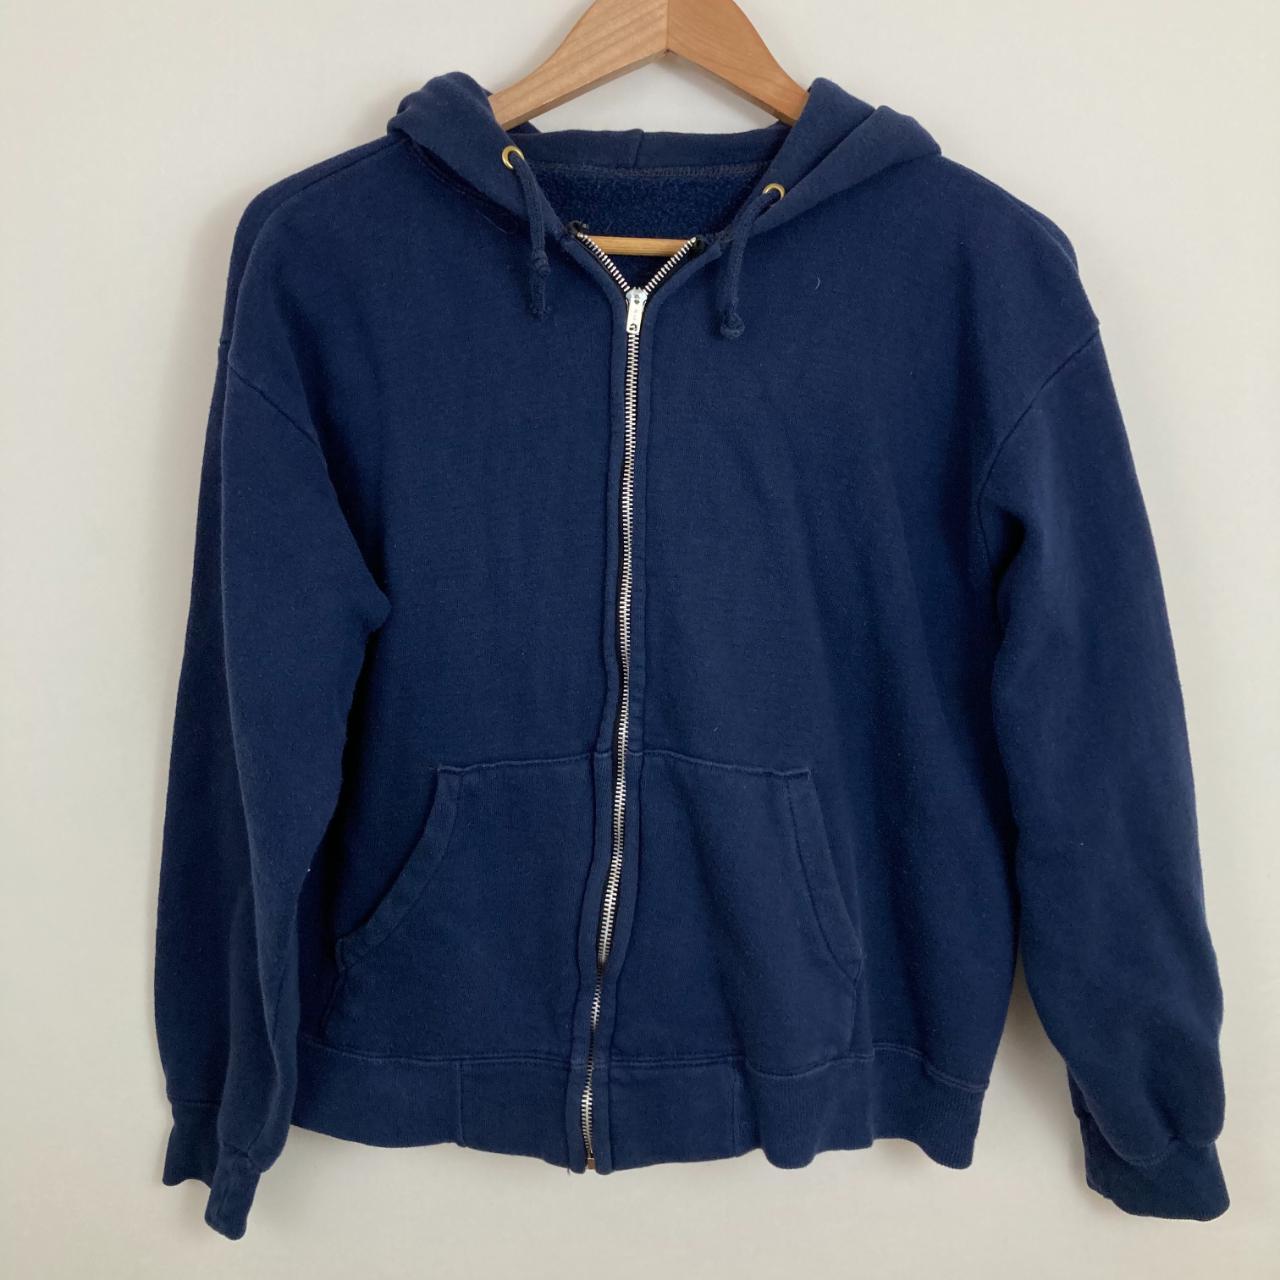 Vintage Navy blue hoodie | super soft | early 80s |... - Depop